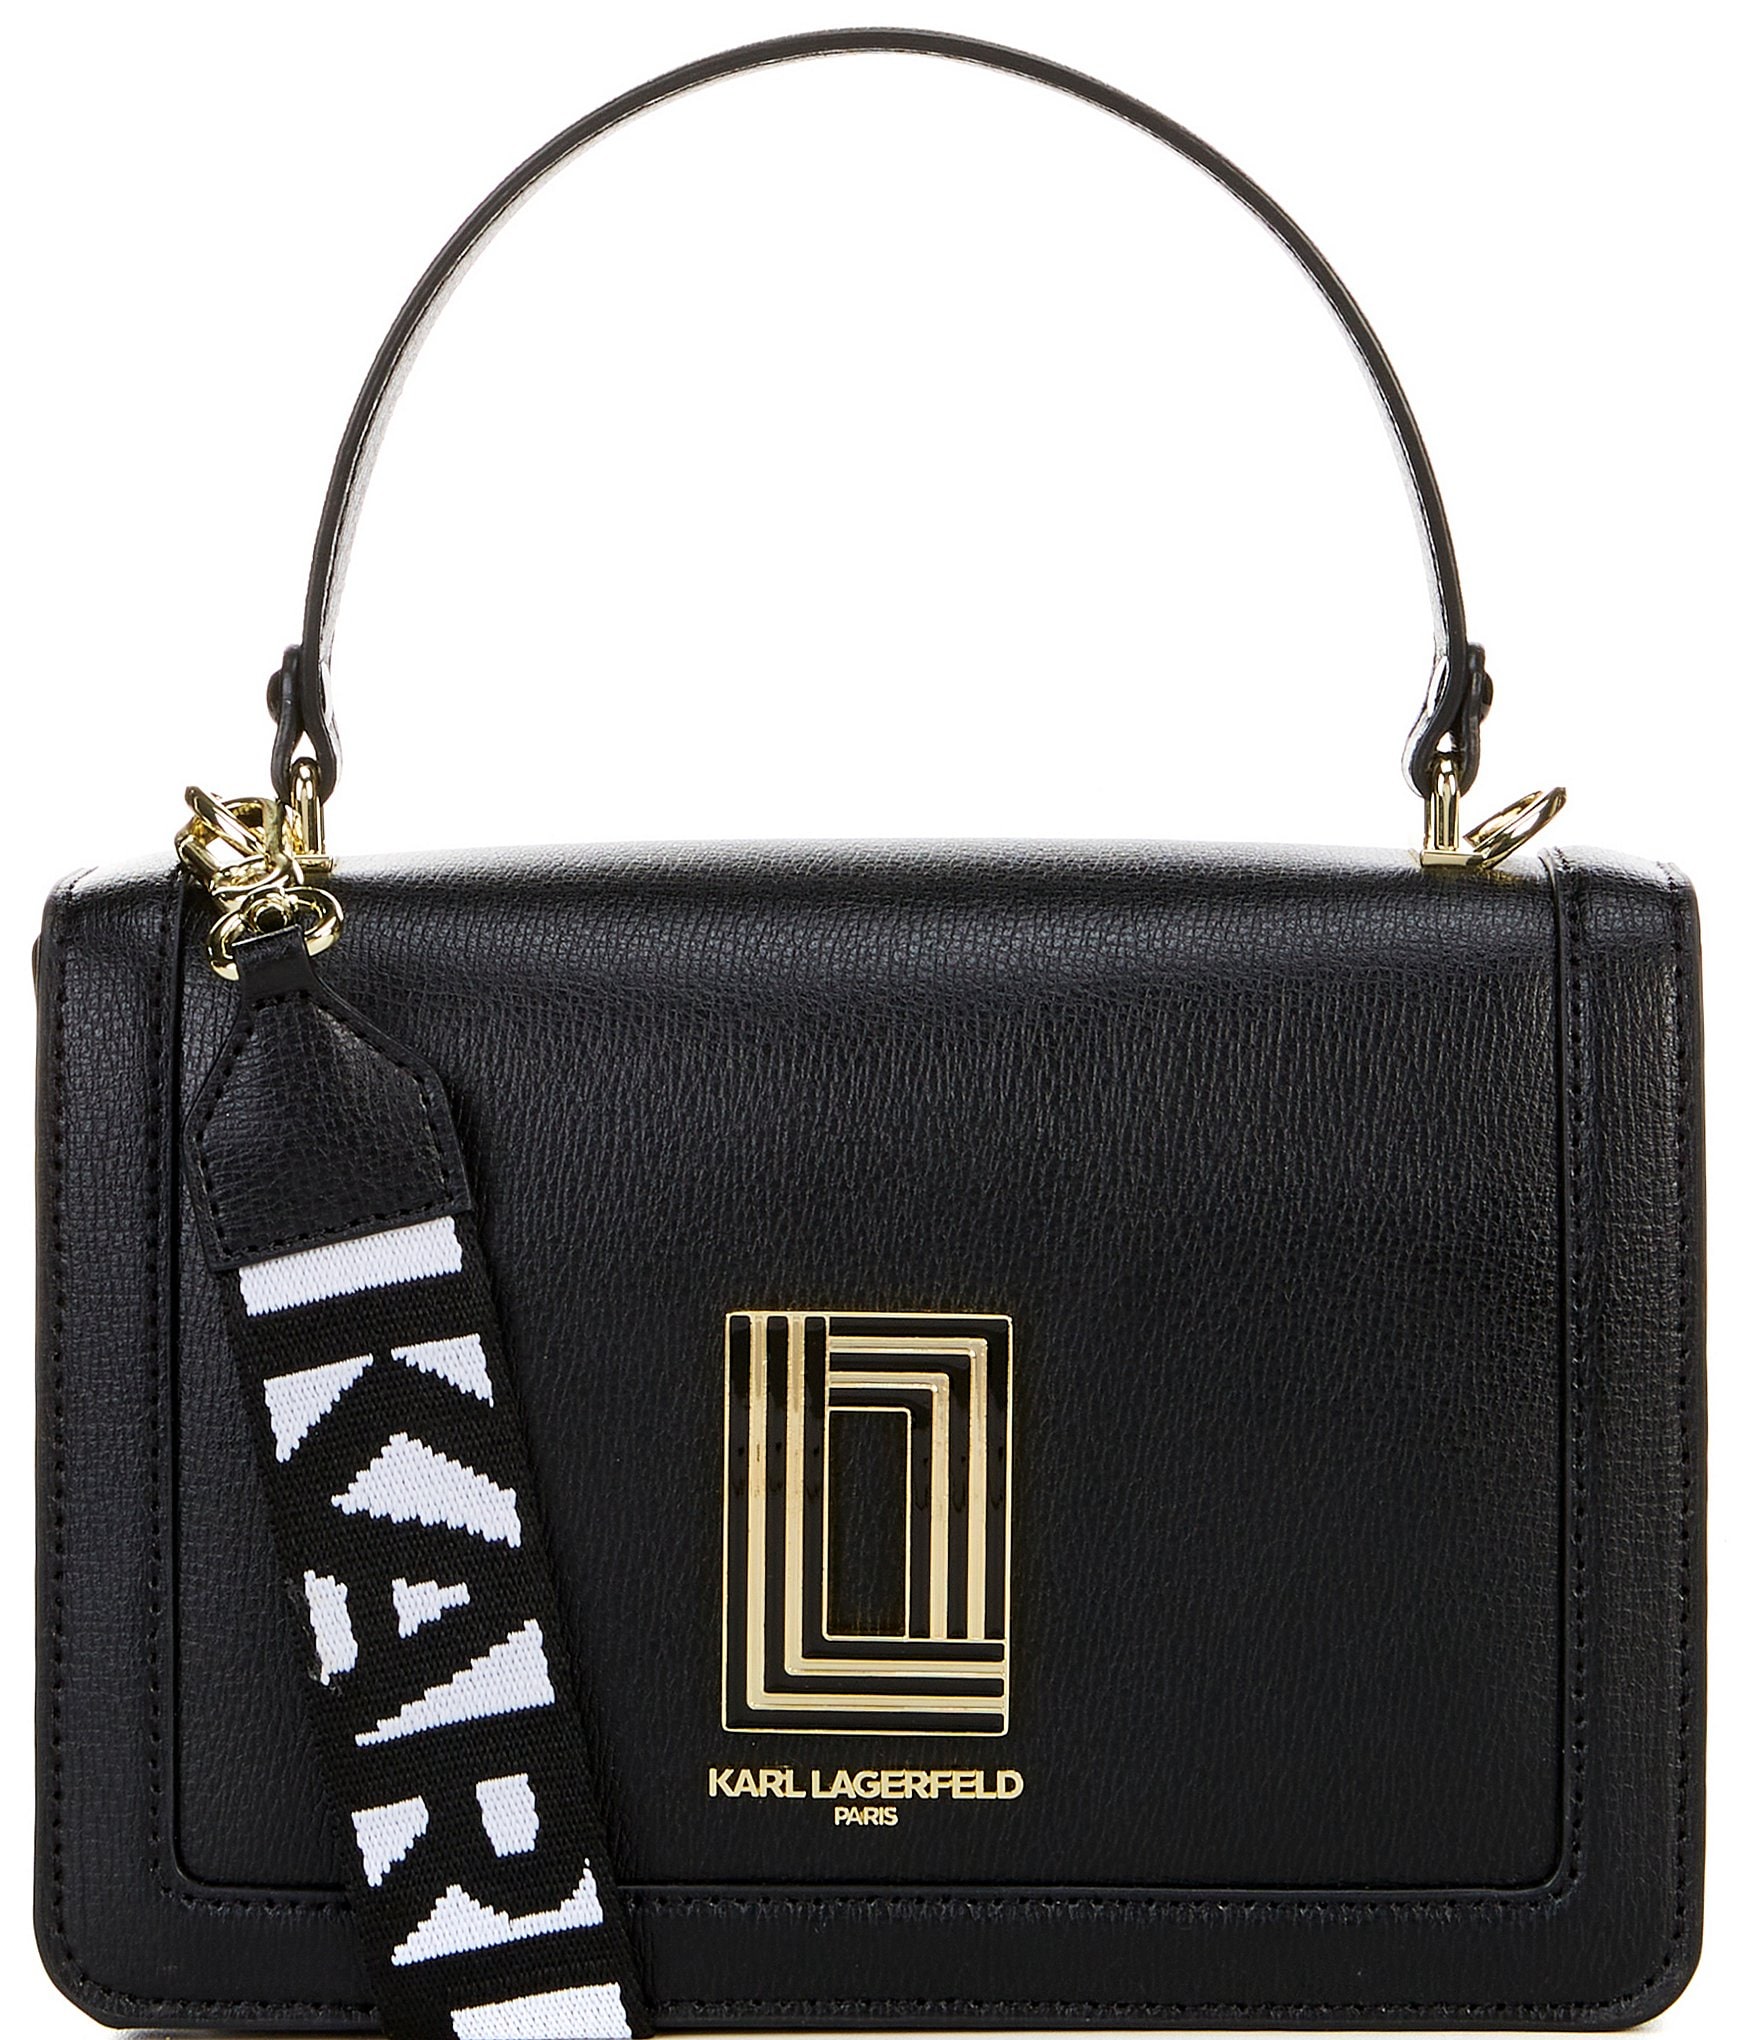 Buy Karl Lagerfeld Bag ikonik Sling Shoulder Bag With OG Bag (J1017)